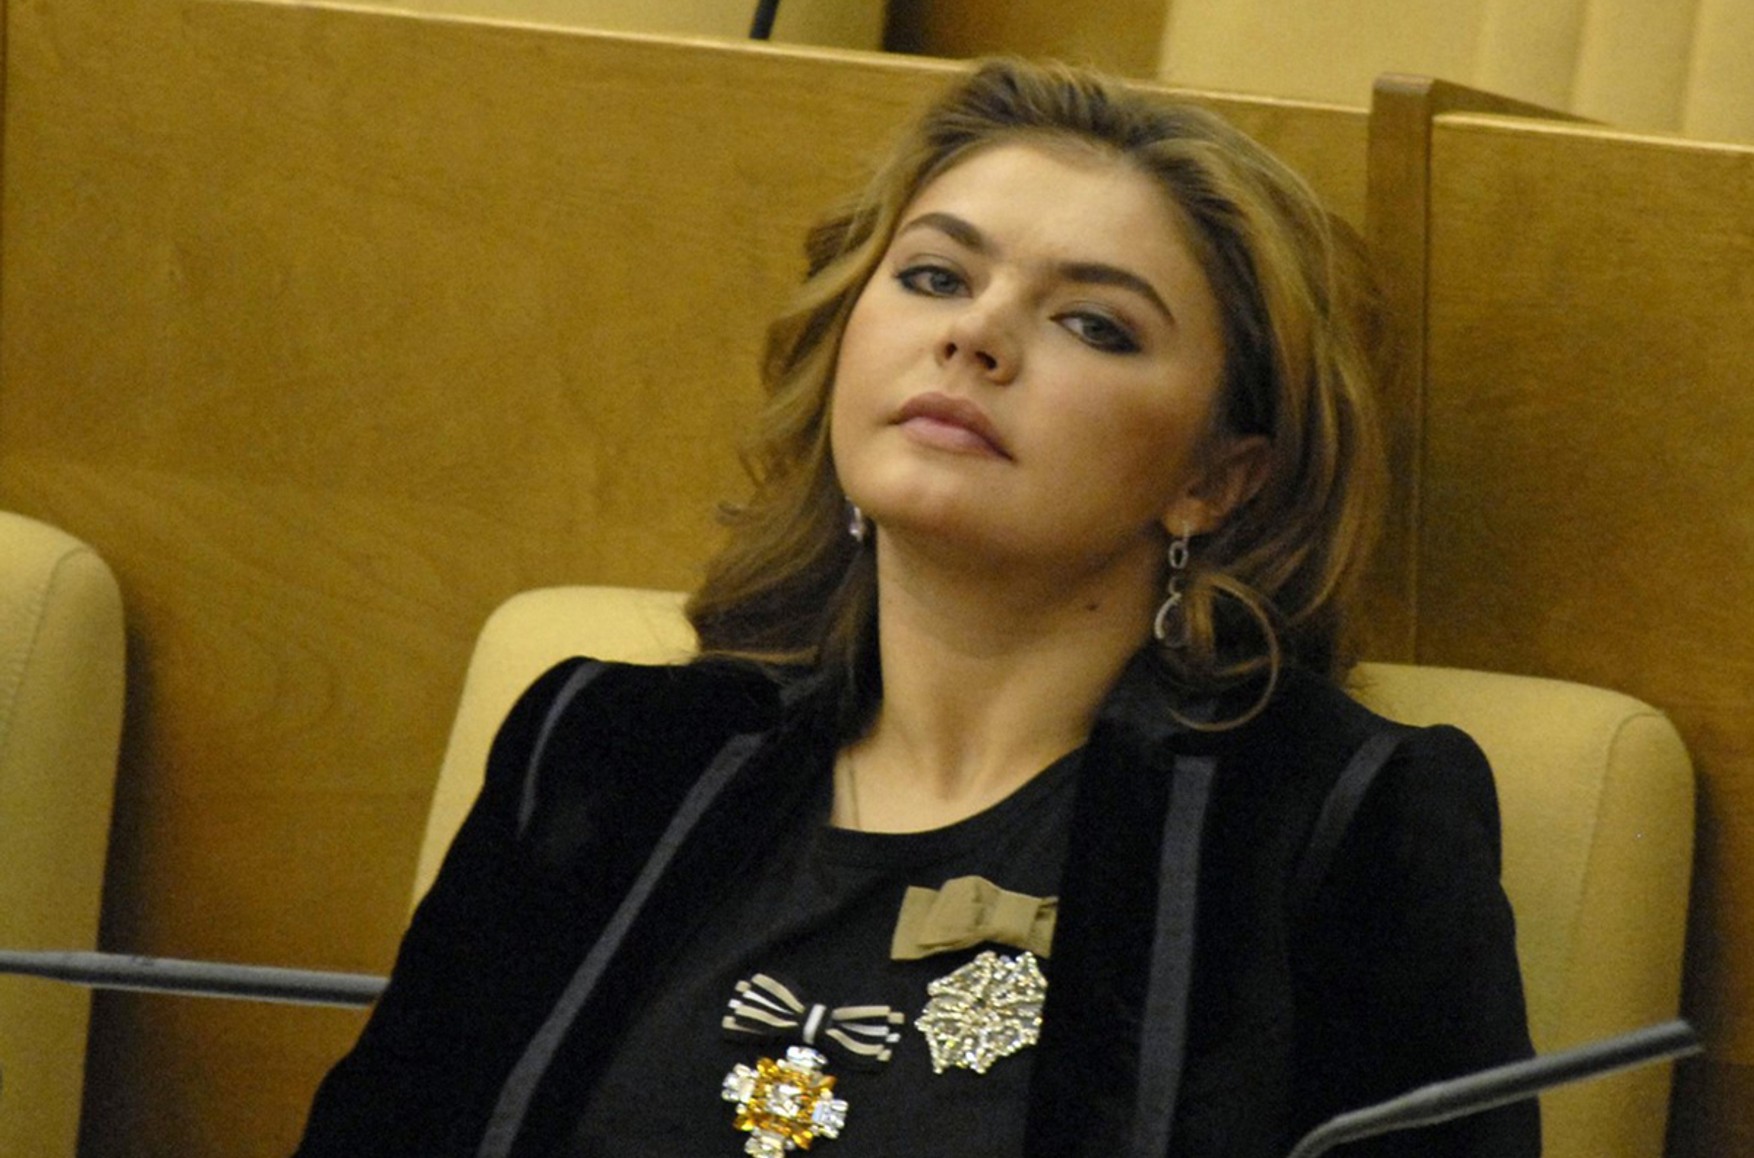 Алина Кабаева, основатель «Яндекса» Аркадий Волож и семья Пескова включены в санкционный список Евросоюза